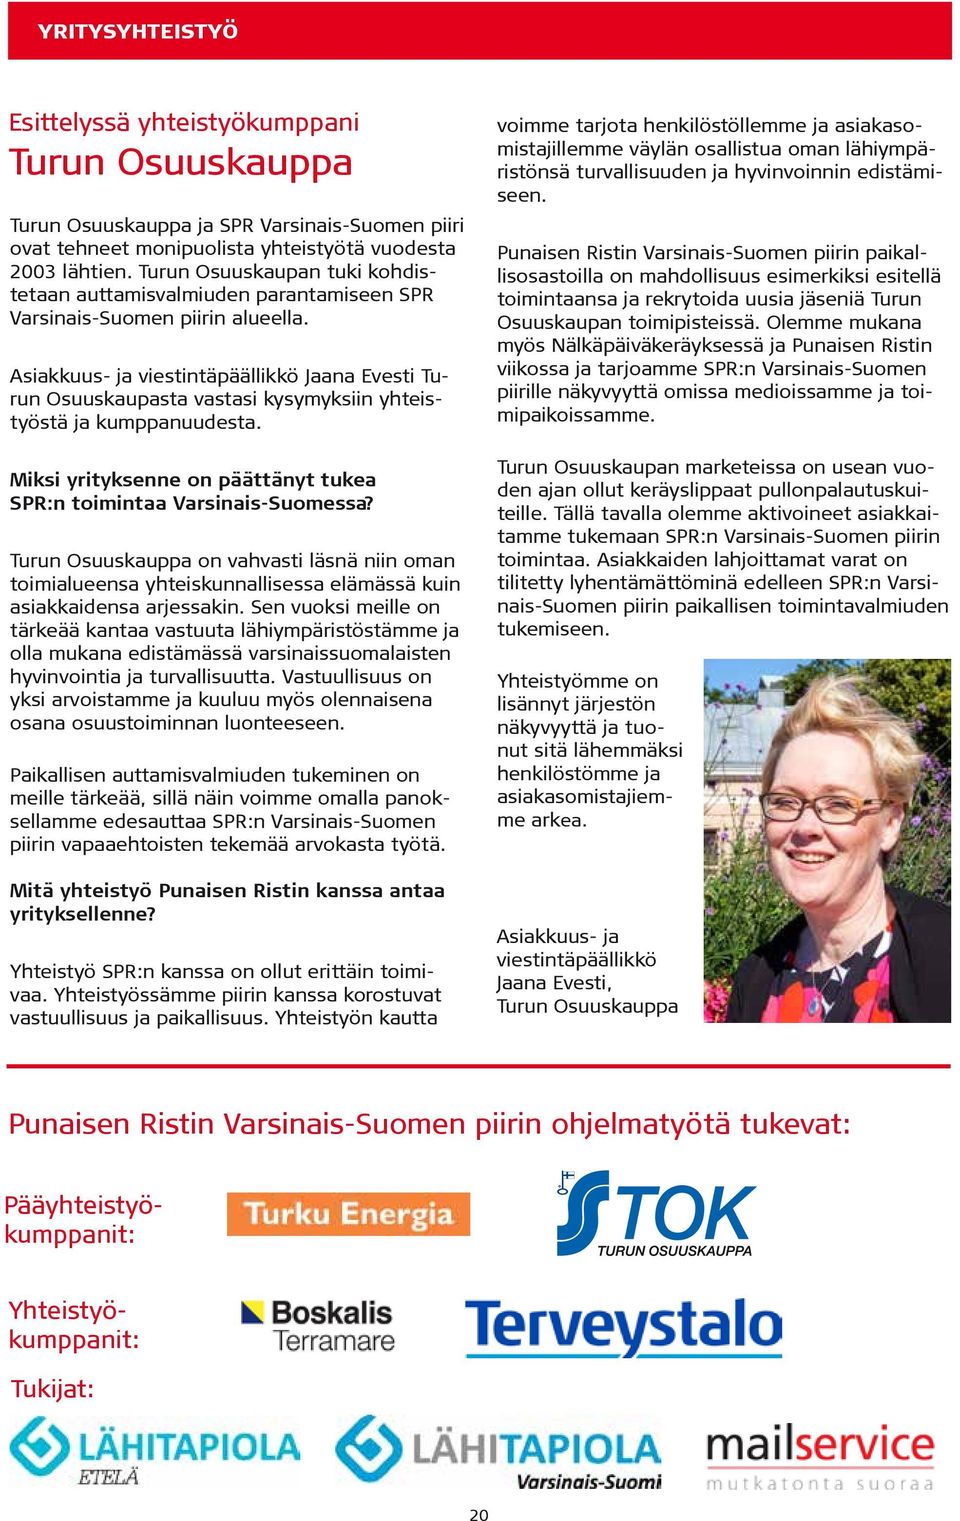 Asiakkuus- ja viestintäpäällikkö Jaana Evesti Turun Osuuskaupasta vastasi kysymyksiin yhteistyöstä ja kumppanuudesta. Miksi yrityksenne on päättänyt tukea SPR:n toimintaa Varsinais-Suomessa?